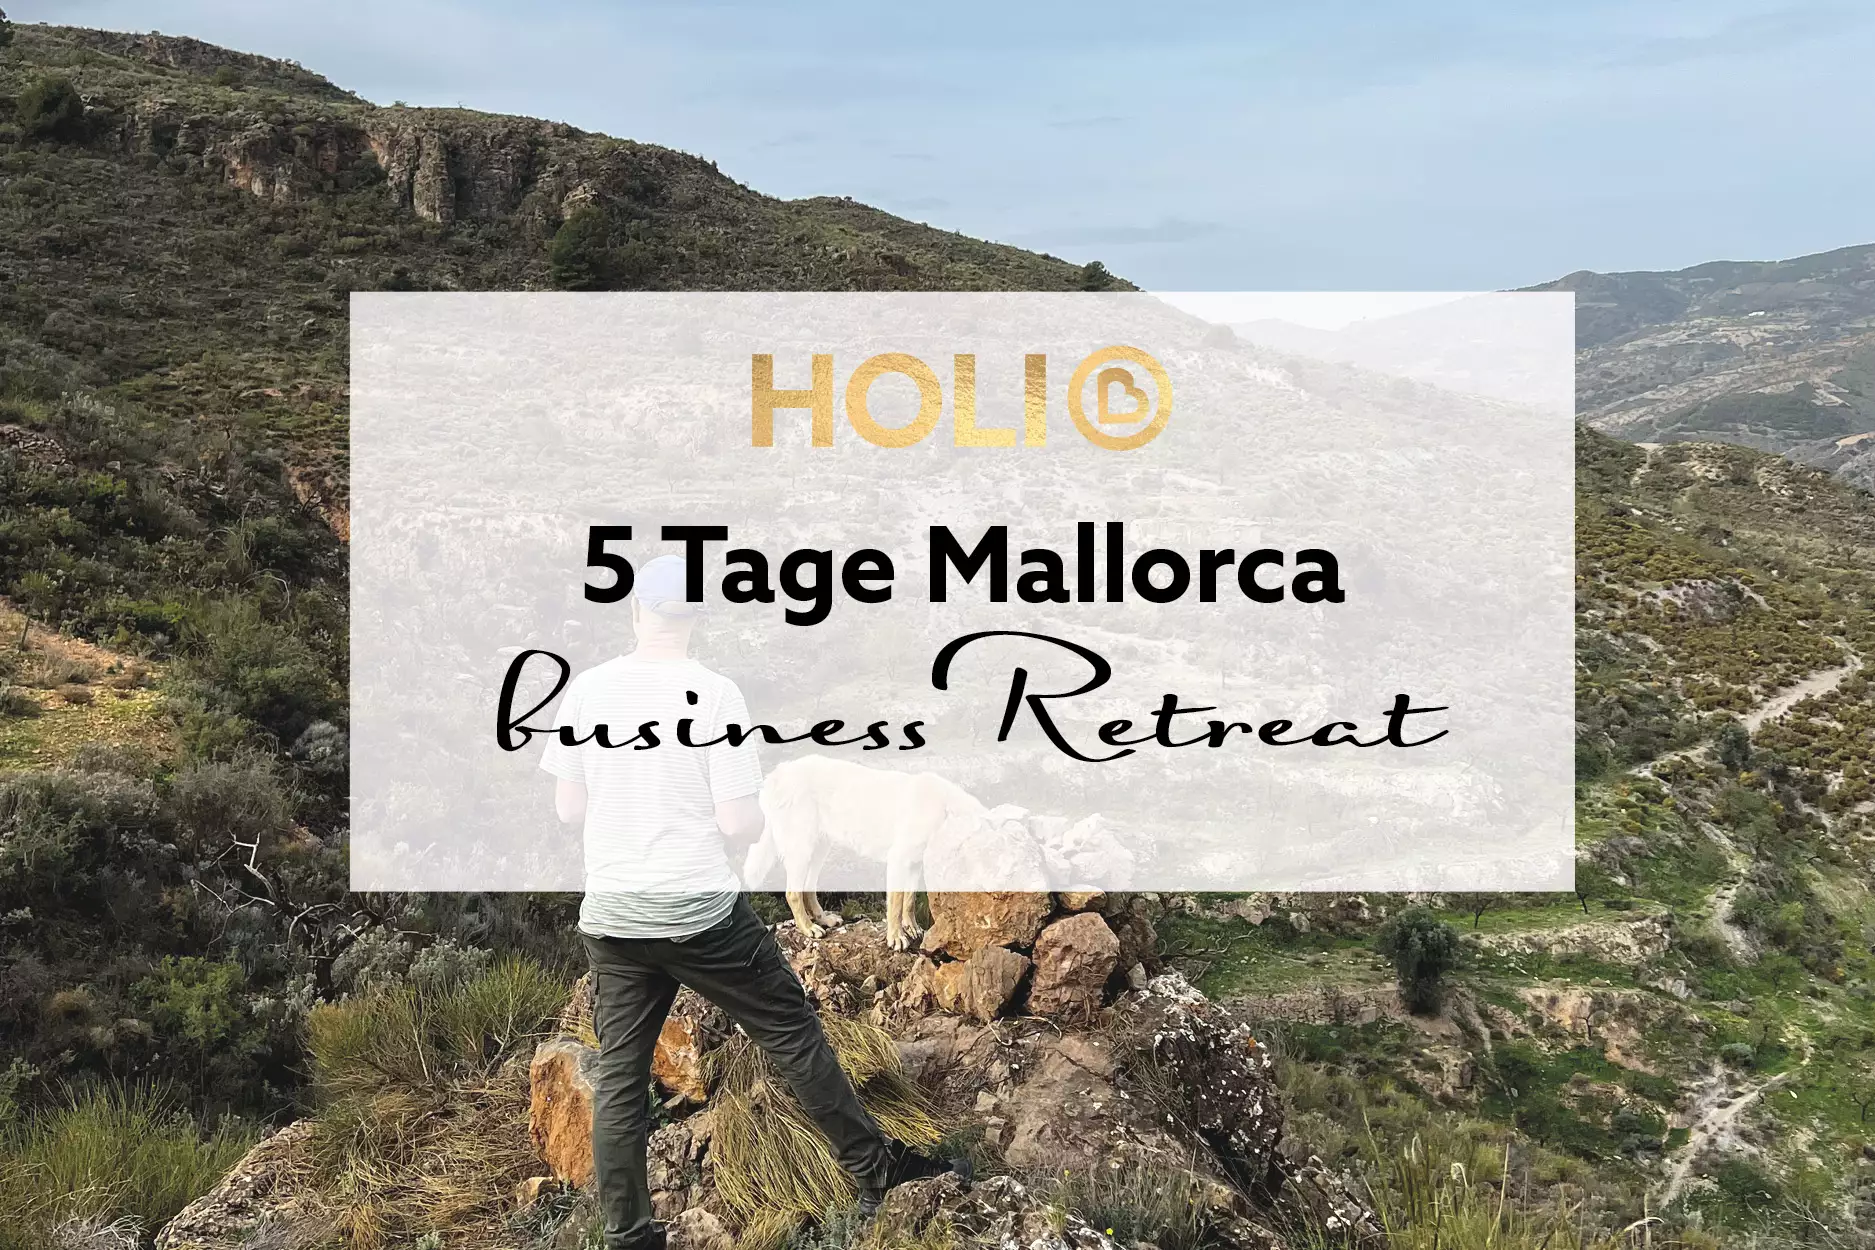 5 Tage Business-Retreat Mallorca